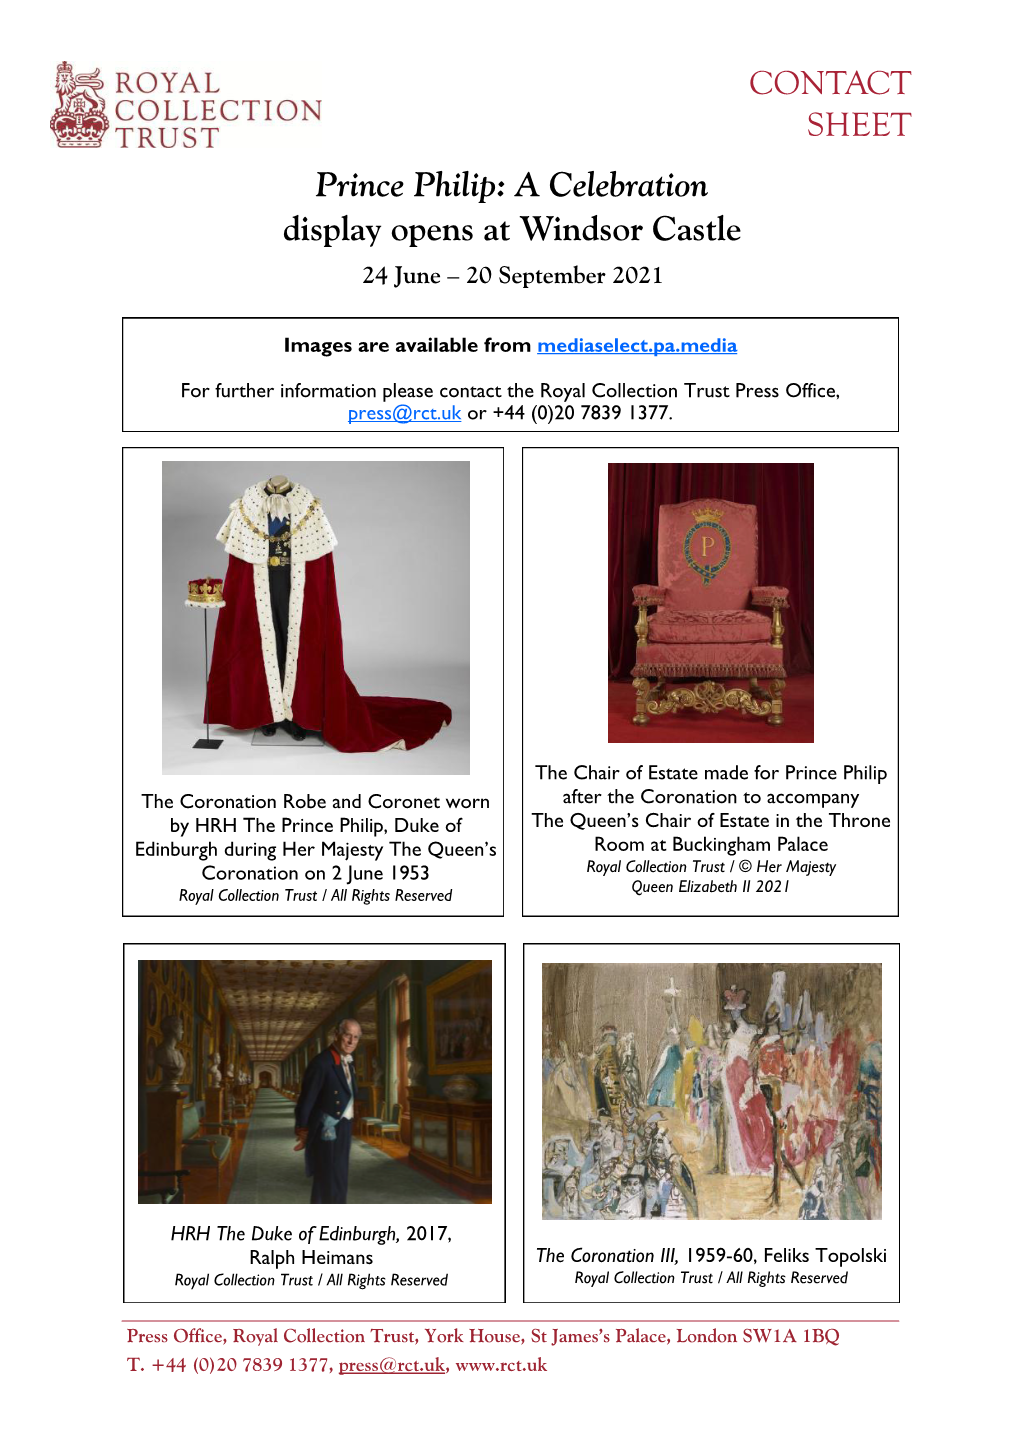 Prince Philip: a Celebration Display Opens at Windsor Castle 24 June – 20 September 2021